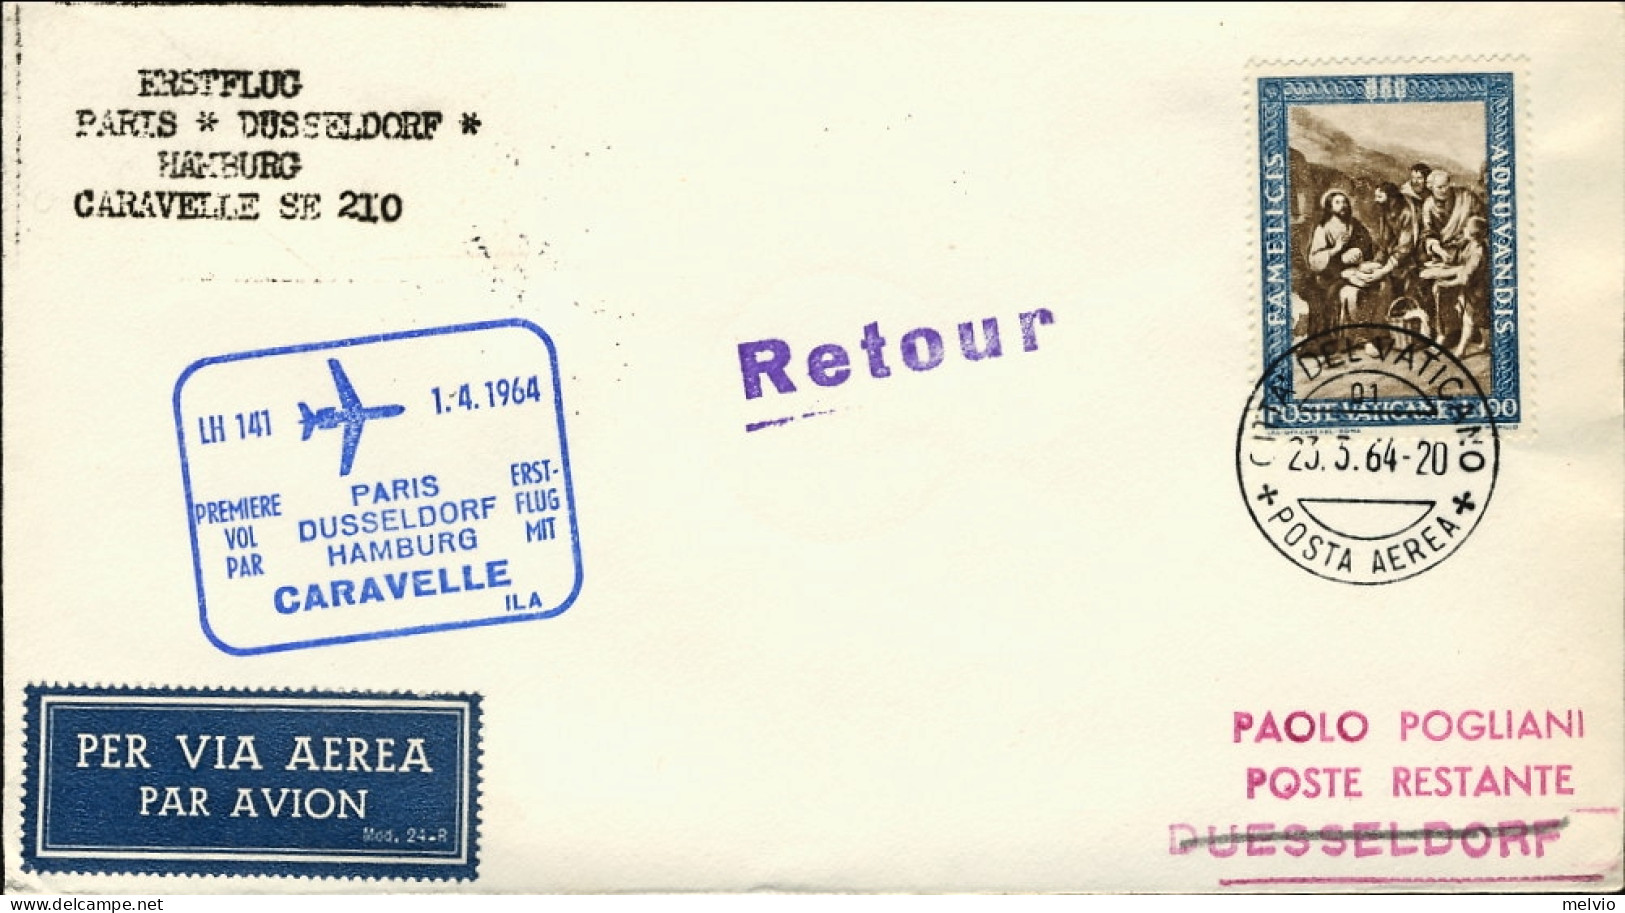 Vaticano-1964 I^volo Caravelle LH 141 Parigi Dusseldorf Amburgo Del 1 Aprile - Posta Aerea